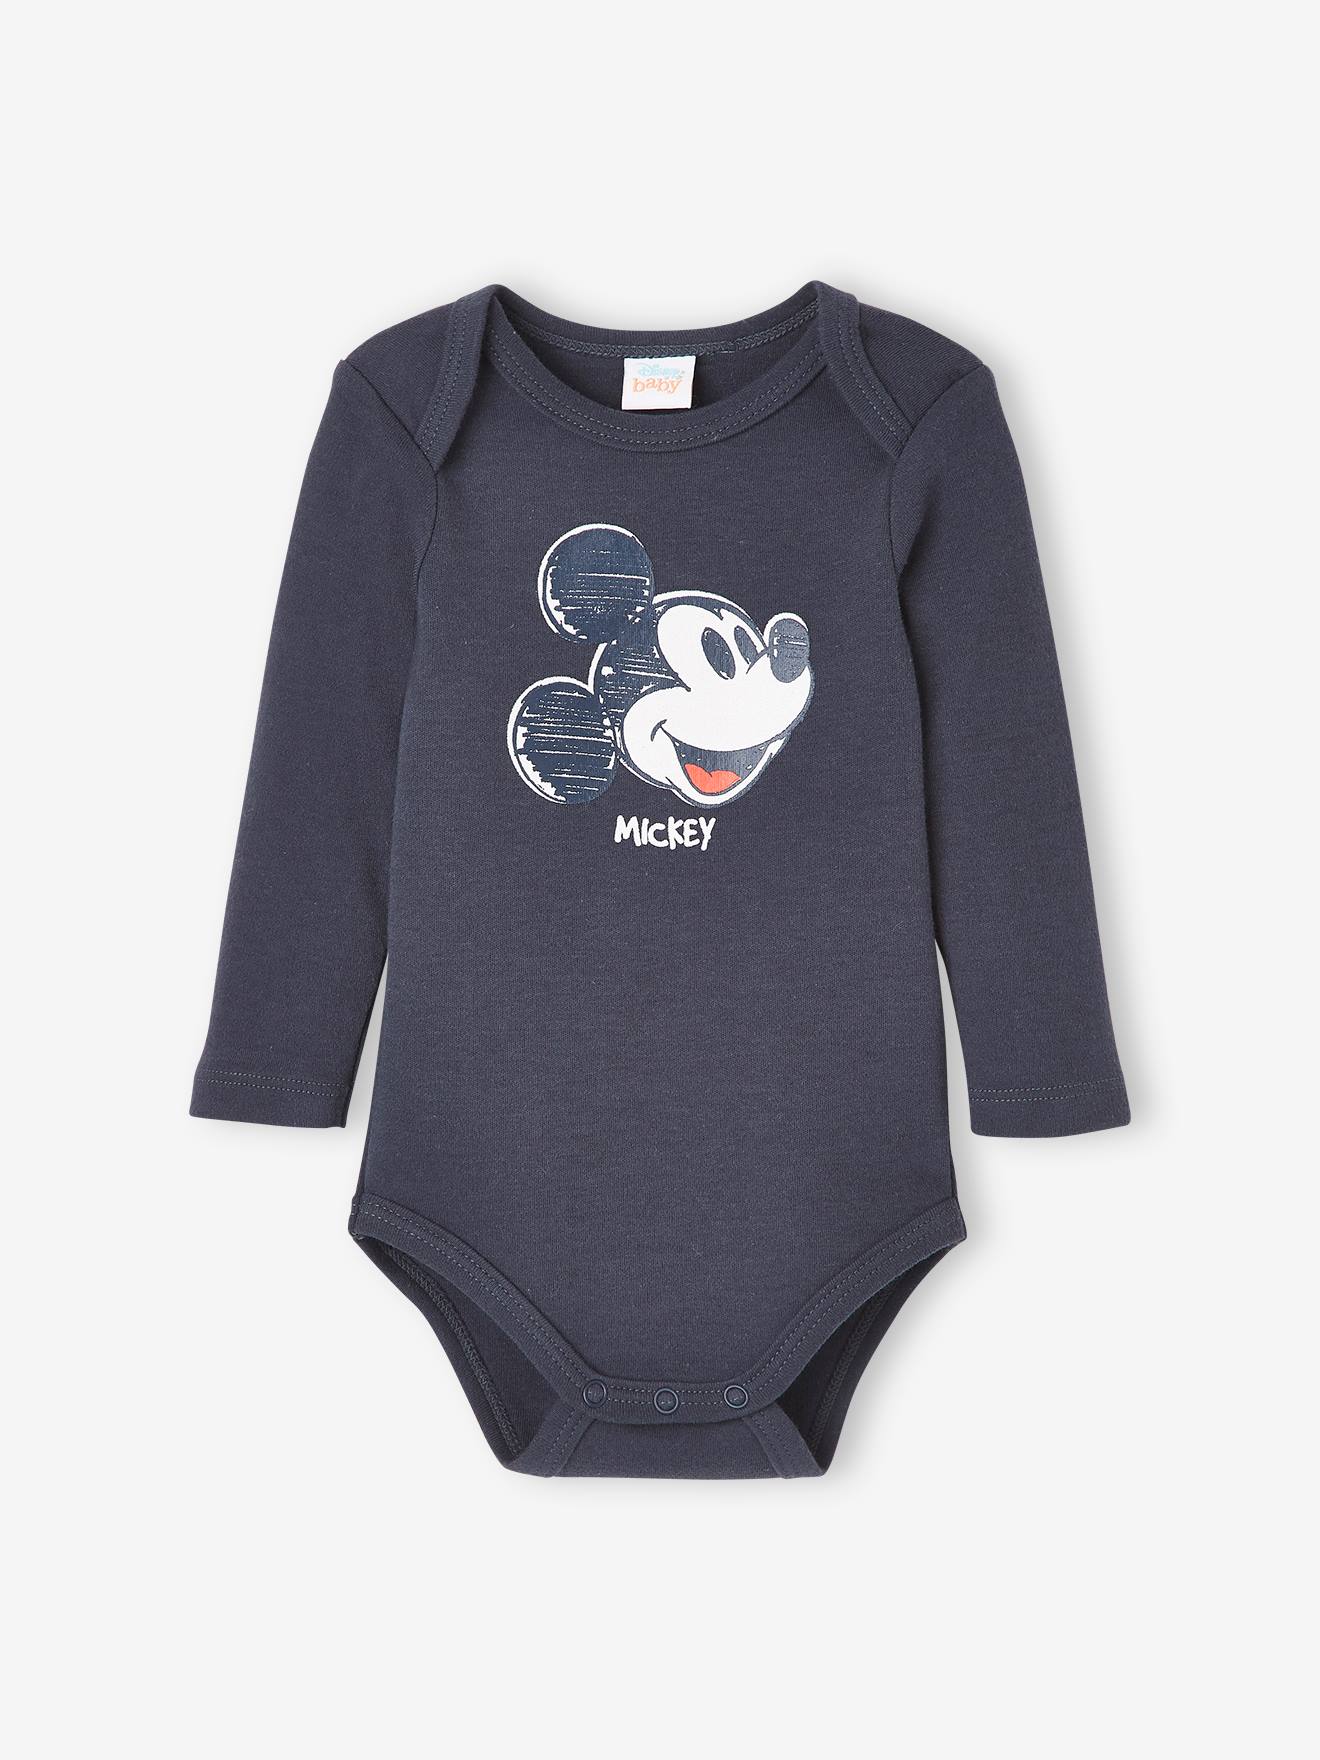 Lot de 2 bodies bébé garçon Disney® Mickey - gris fonce uni avec decor